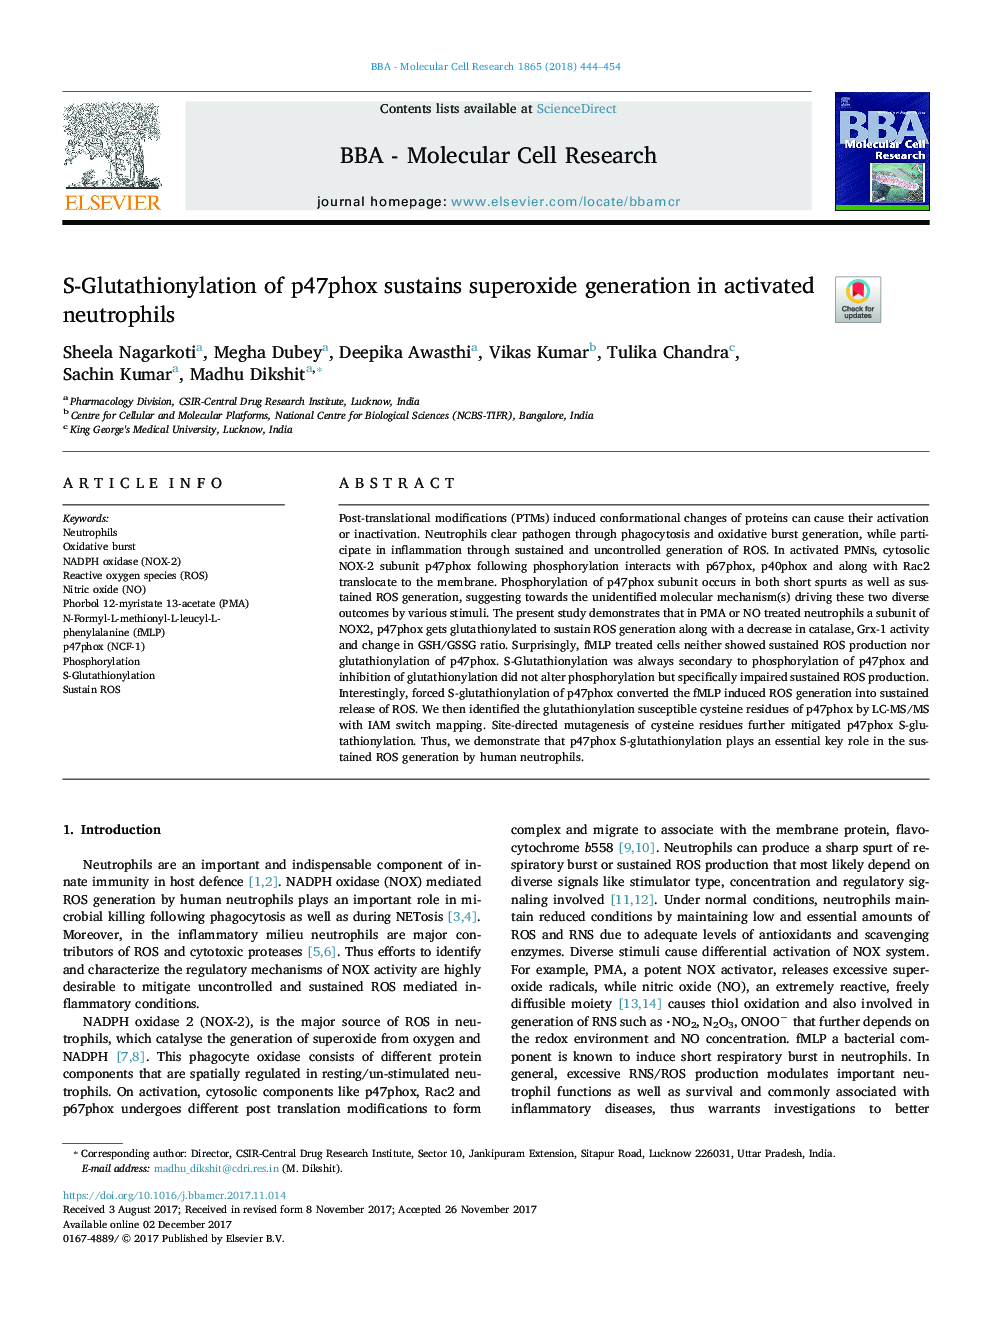 S-Glutathionylation of p47phox sustains superoxide generation in activated neutrophils